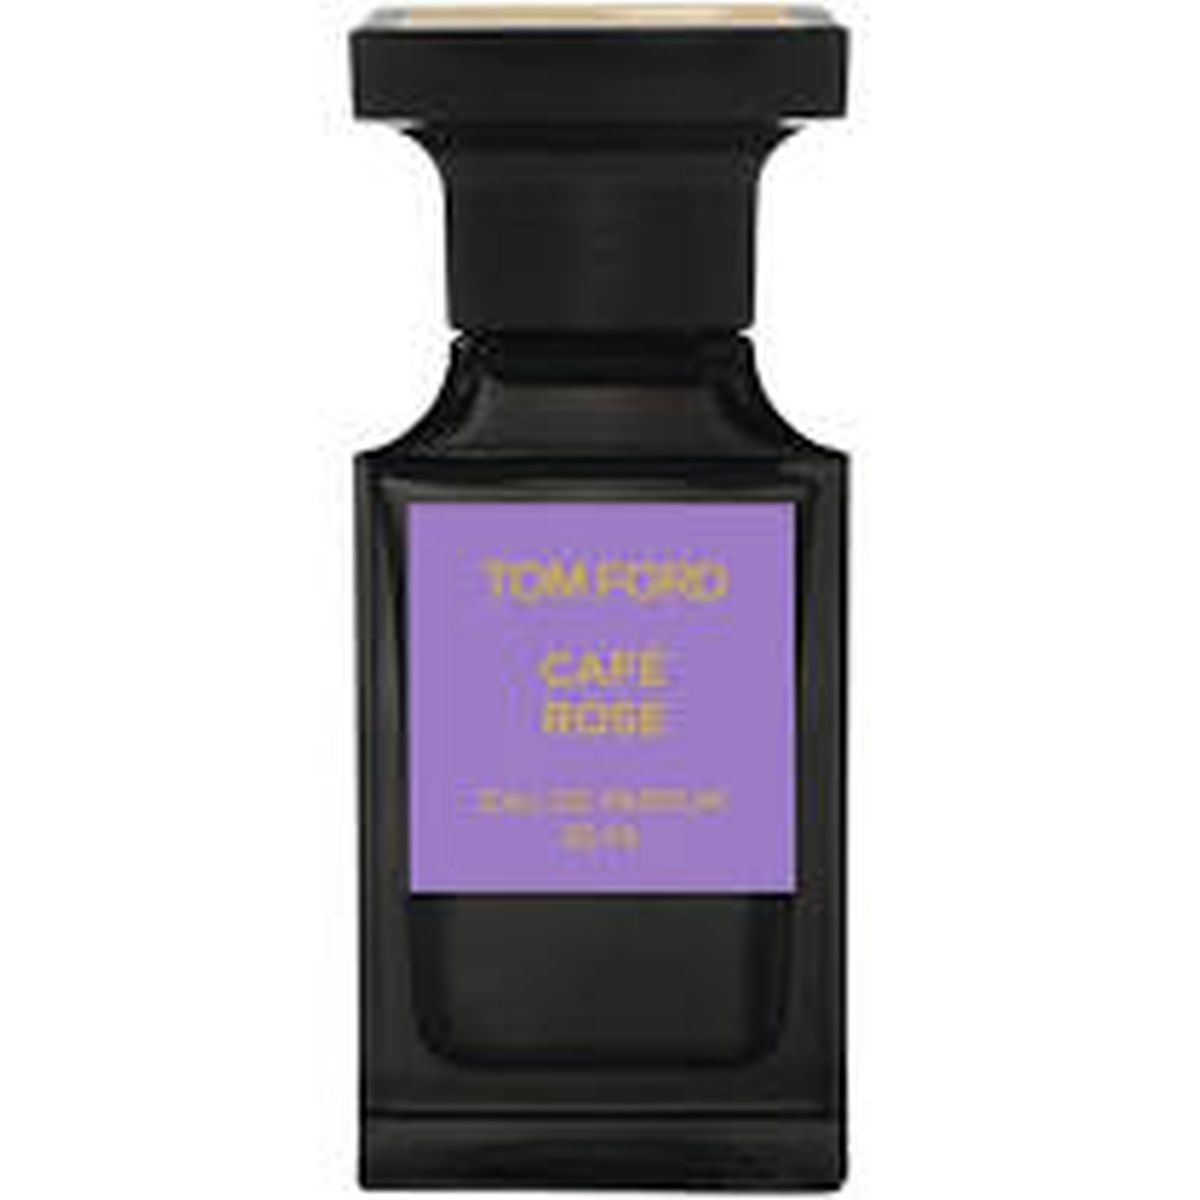 Tom Ford Caf Rose Eau De Parfum 50ml